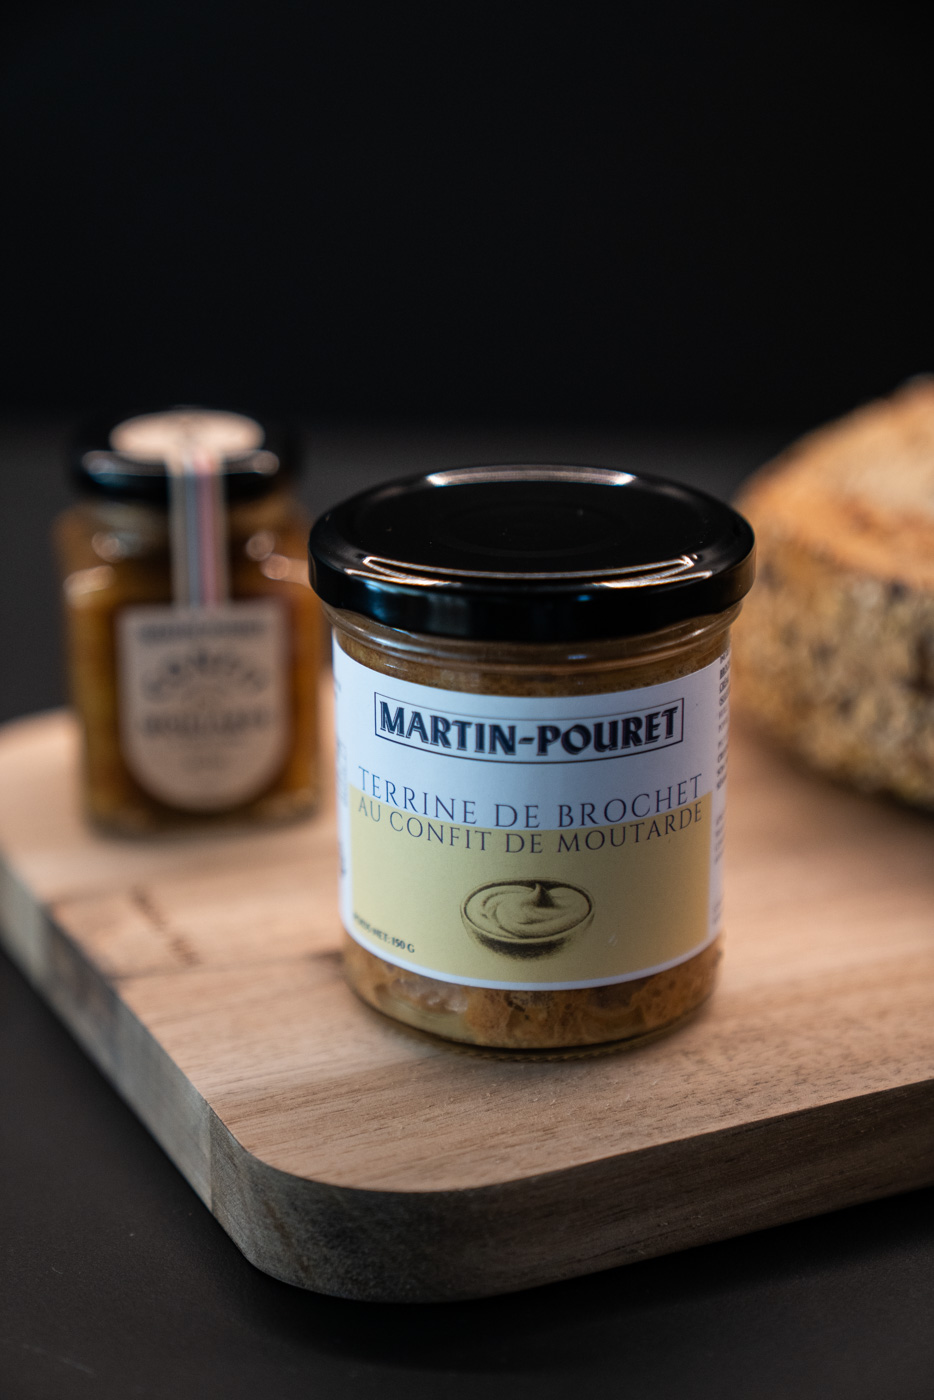 Terrine de brochet au confit de moutarde Martin-Pouret